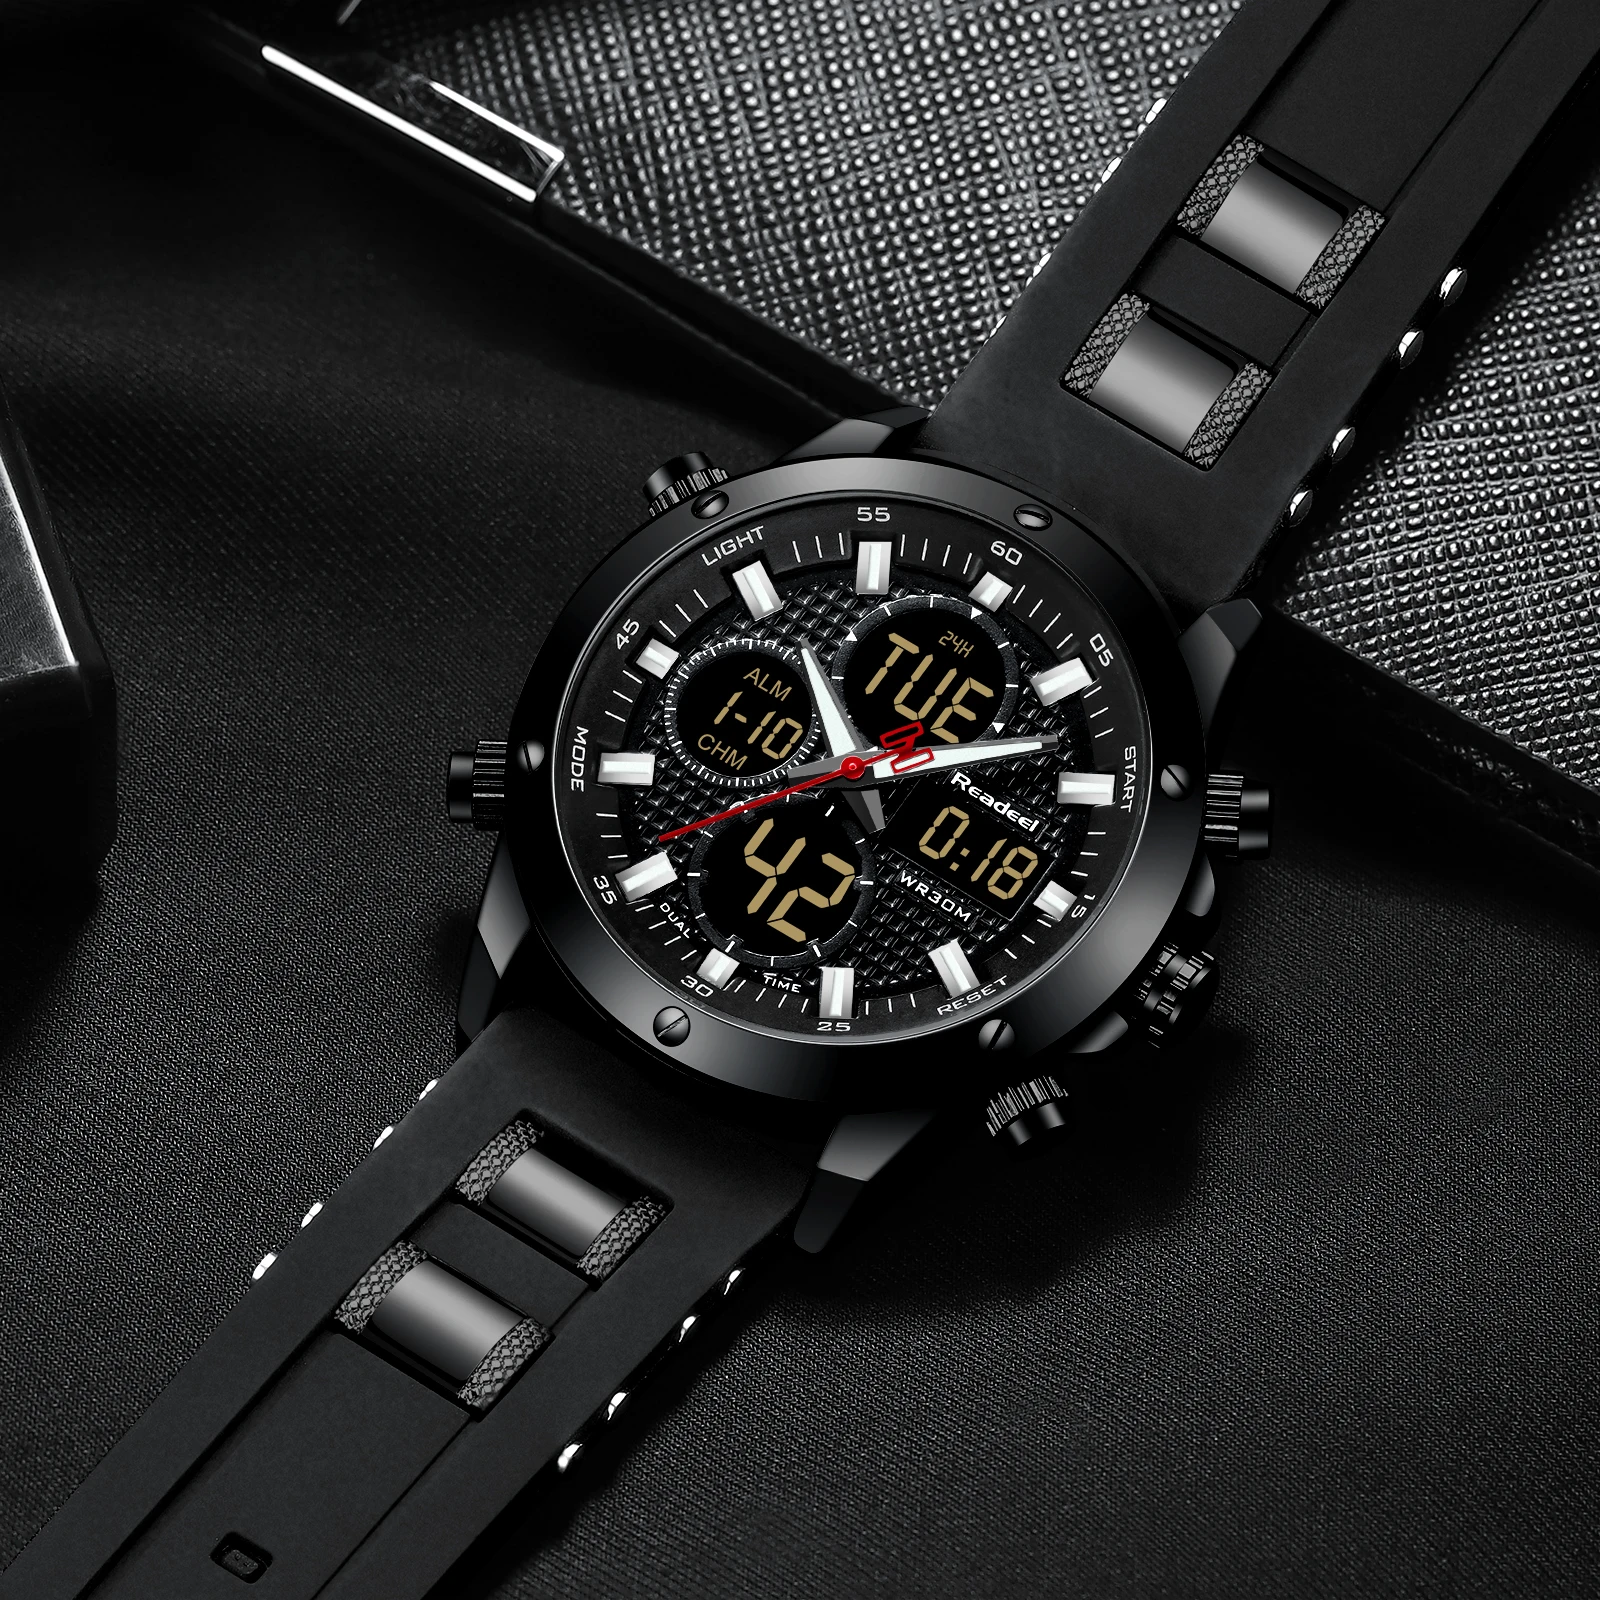 Модные мужские часы Readeel Брендовые спортивные часы для мужчин светодиодный цифровой кварцевый резиновый водонепроницаемый хронограф часы для мужчин Relogio